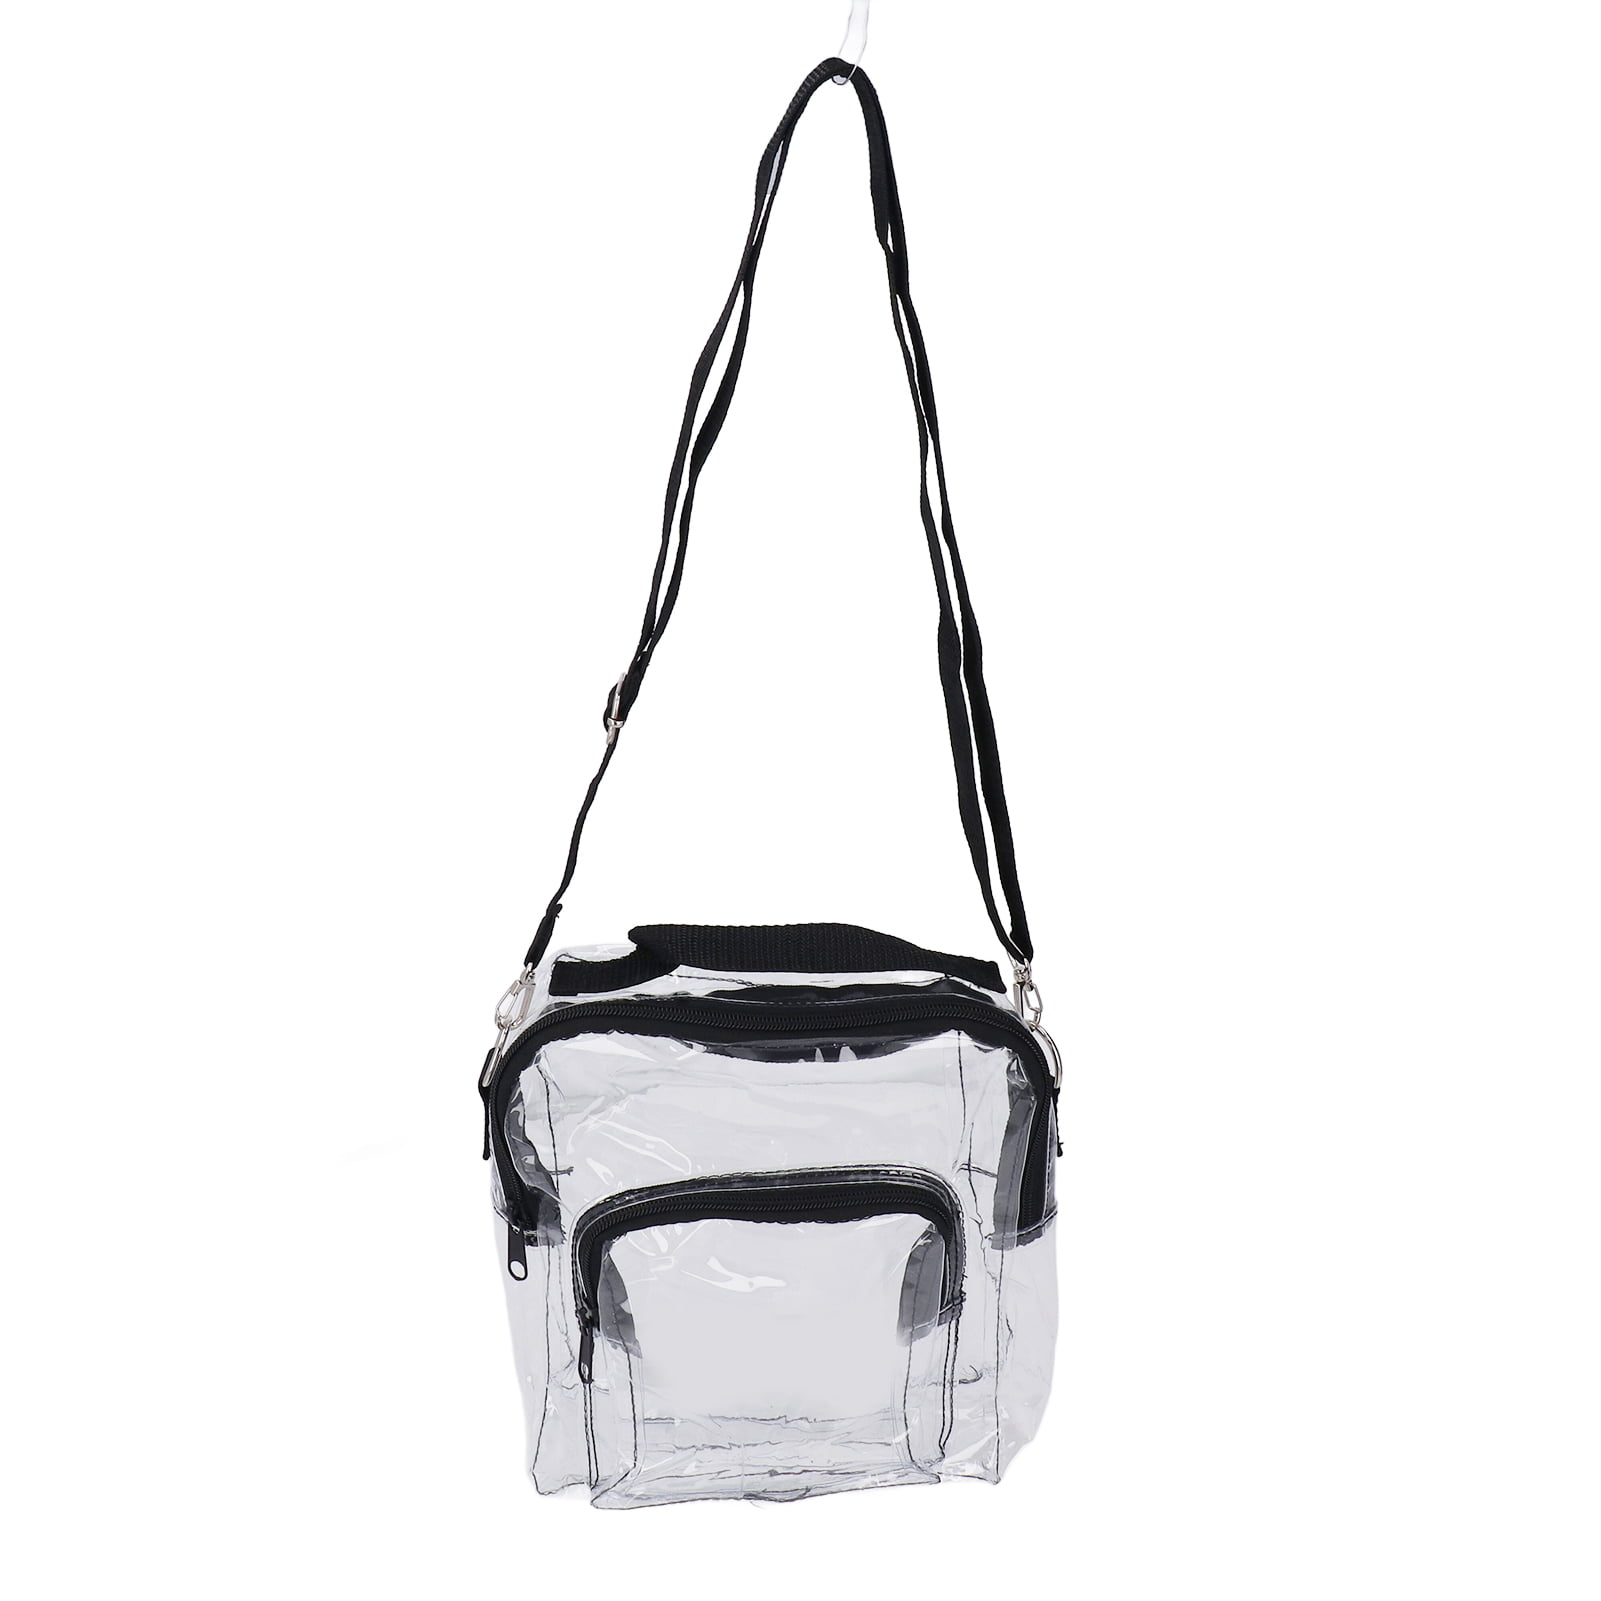 Clear Shoulder Bag, Transparent Messenger Bag PVC Visible Inside For ...